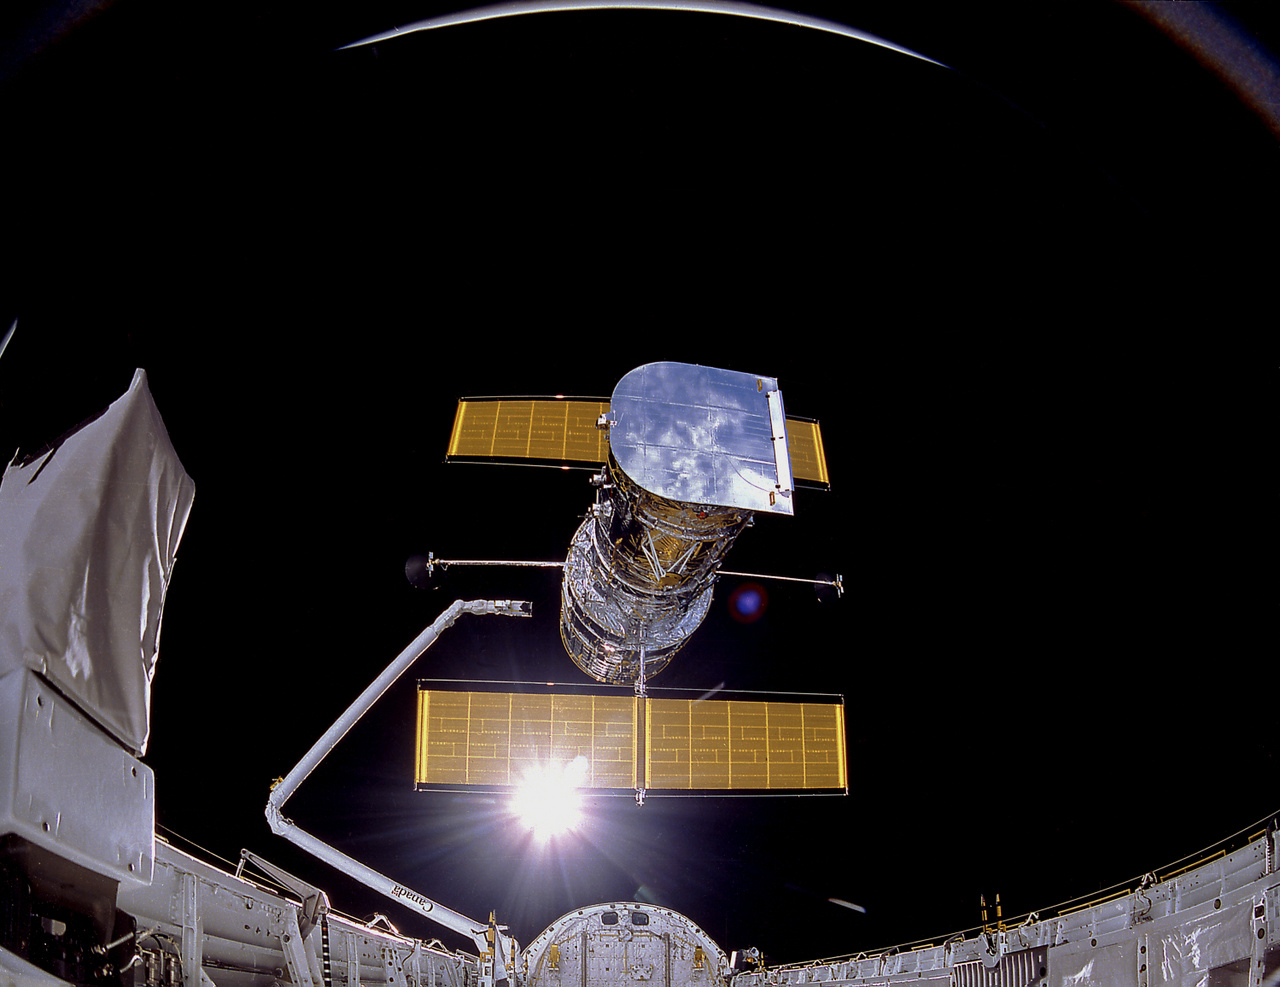 1990. április 25. A Hubble a pályára állítás pillanatában, 614 kilométerrel a Föld fölött. A jellegzetes dupla napelemtáblák már teljesen nyitva, és az űrtávcsövet már nem tartja a Discovery űrsikló mozgatható karja. A csodálatos felvételt IMAX kamerával készítették.
                        